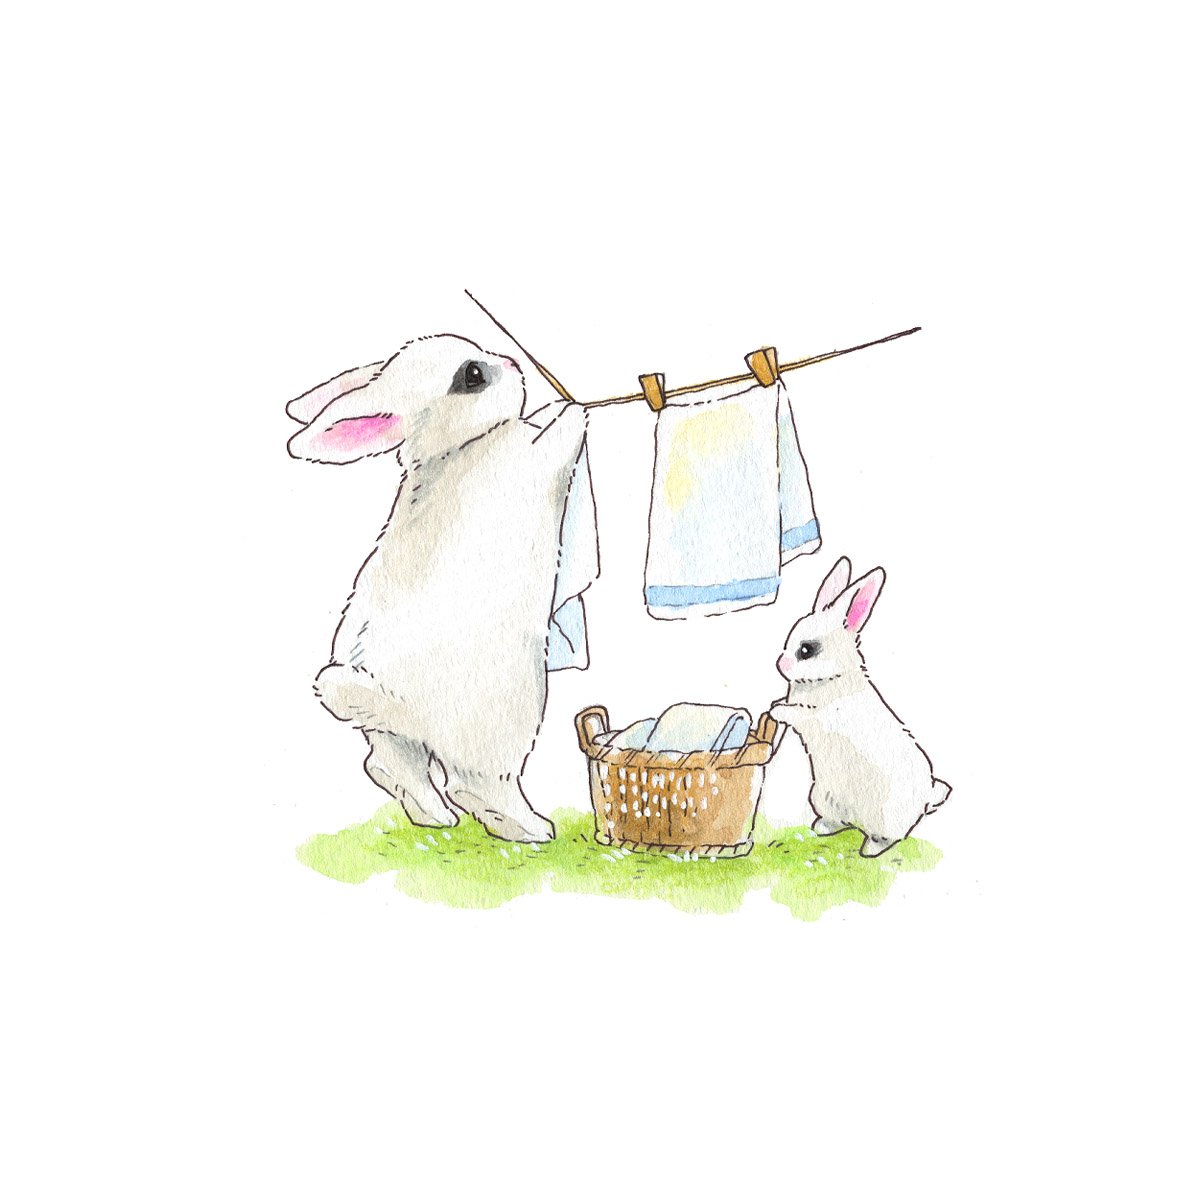 clothesline rabbit laundry no humans basket white background animal  illustration images